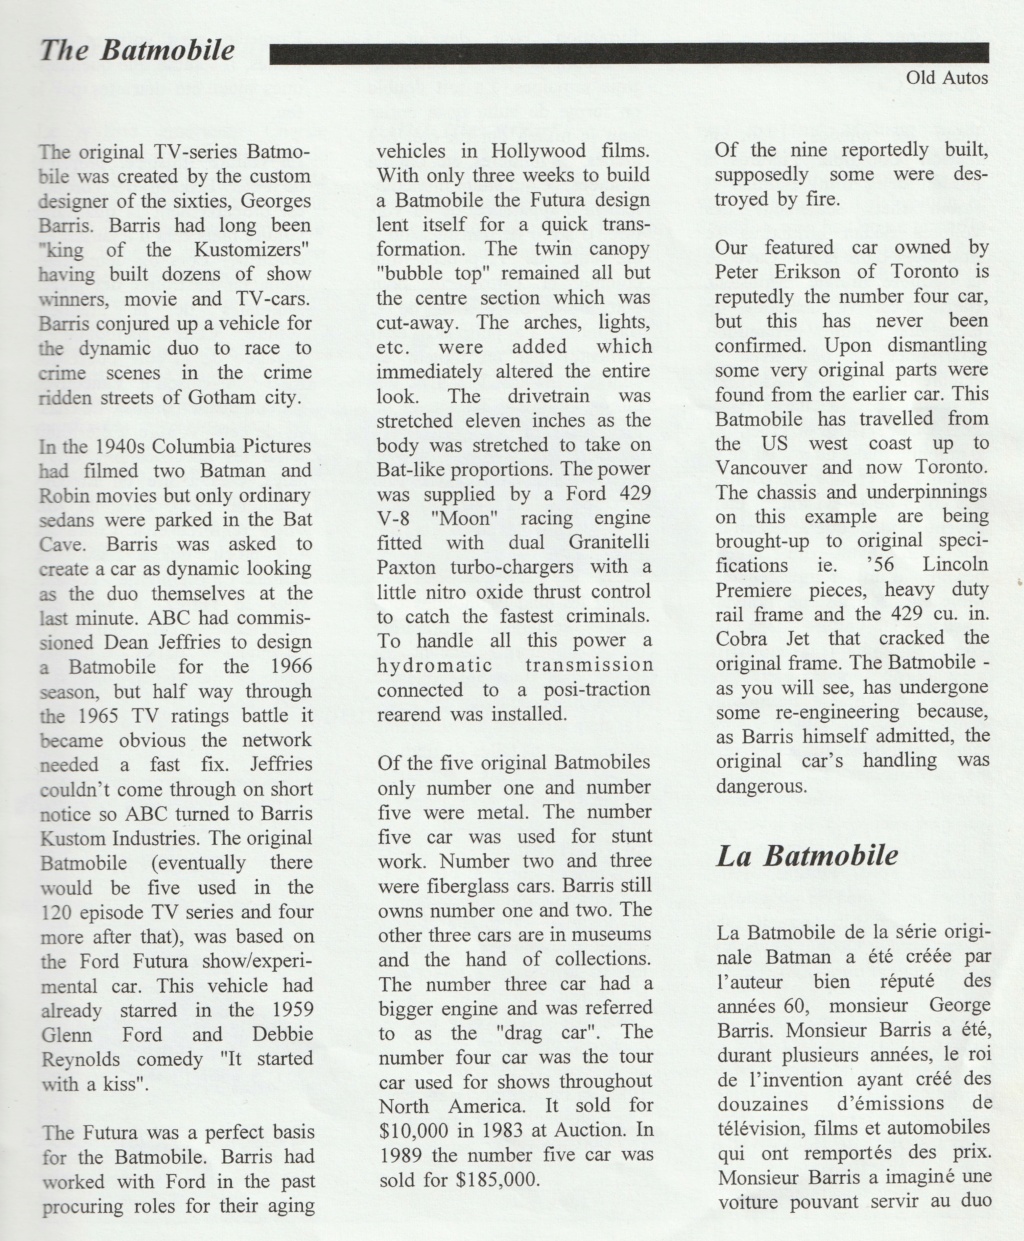 Montréal Mustang dans le temps! 1981 à aujourd'hui (Histoire en photos) - Page 8 Img_2338